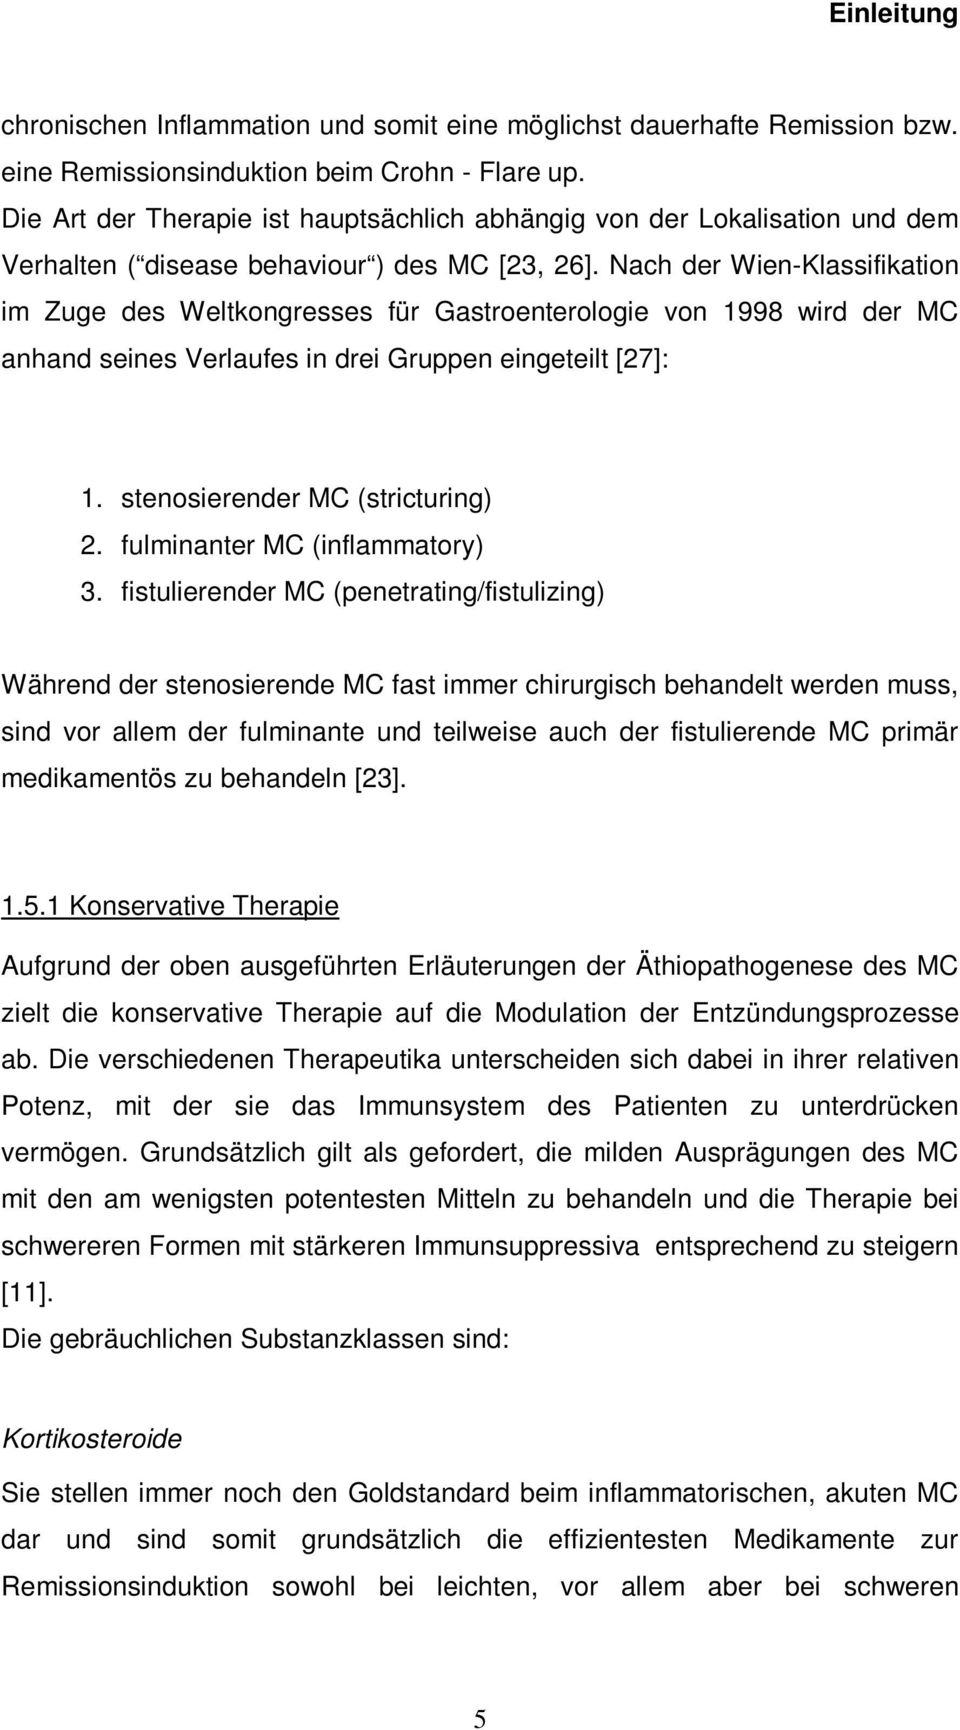 Nach der Wien-Klassifikation im Zuge des Weltkongresses für Gastroenterologie von 1998 wird der MC anhand seines Verlaufes in drei Gruppen eingeteilt [27]: 1. stenosierender MC (stricturing) 2.